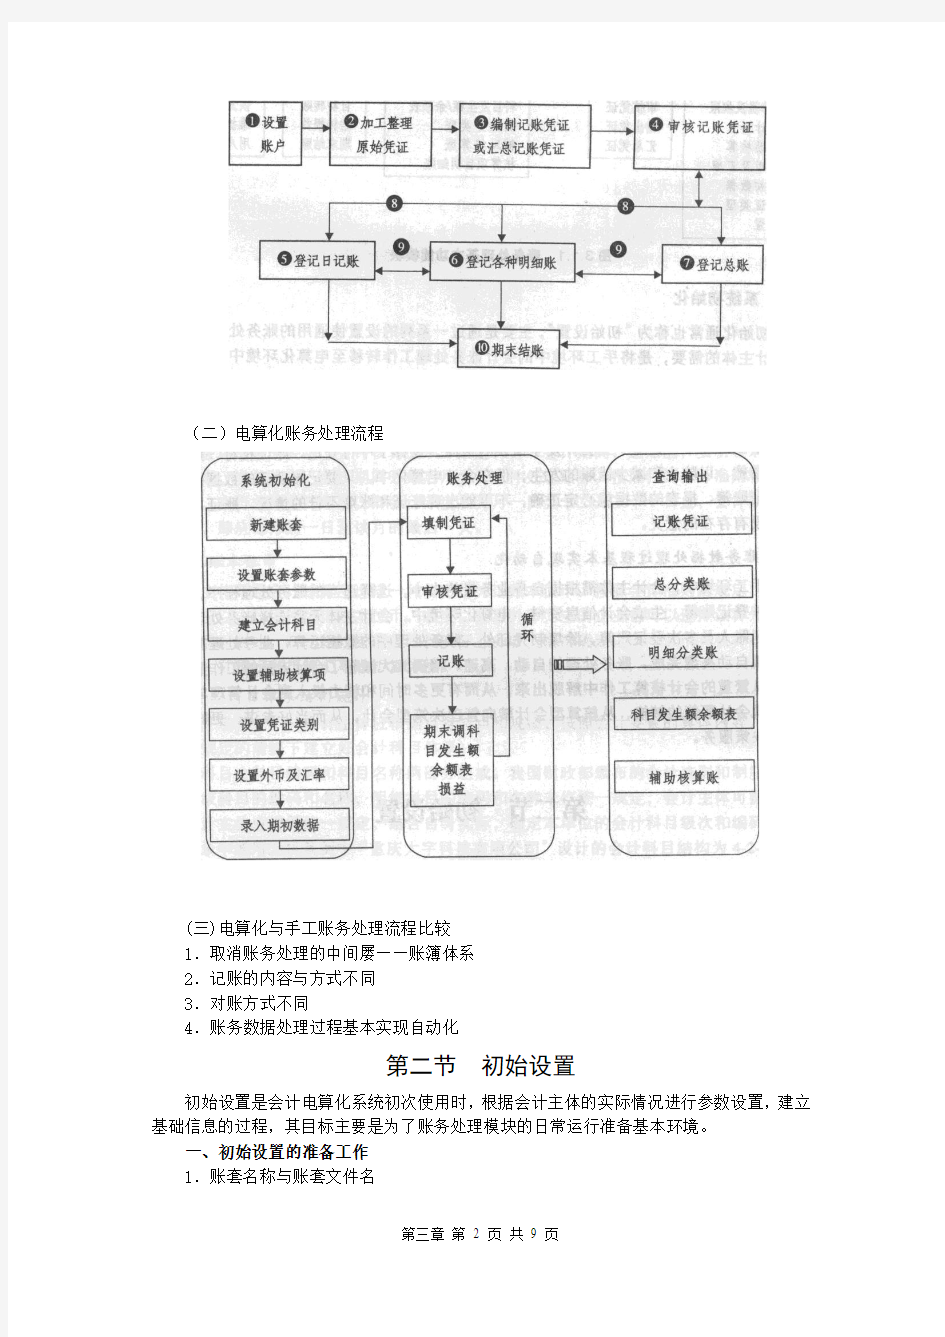 重庆会计从业资格考试《电算化》第三章重点